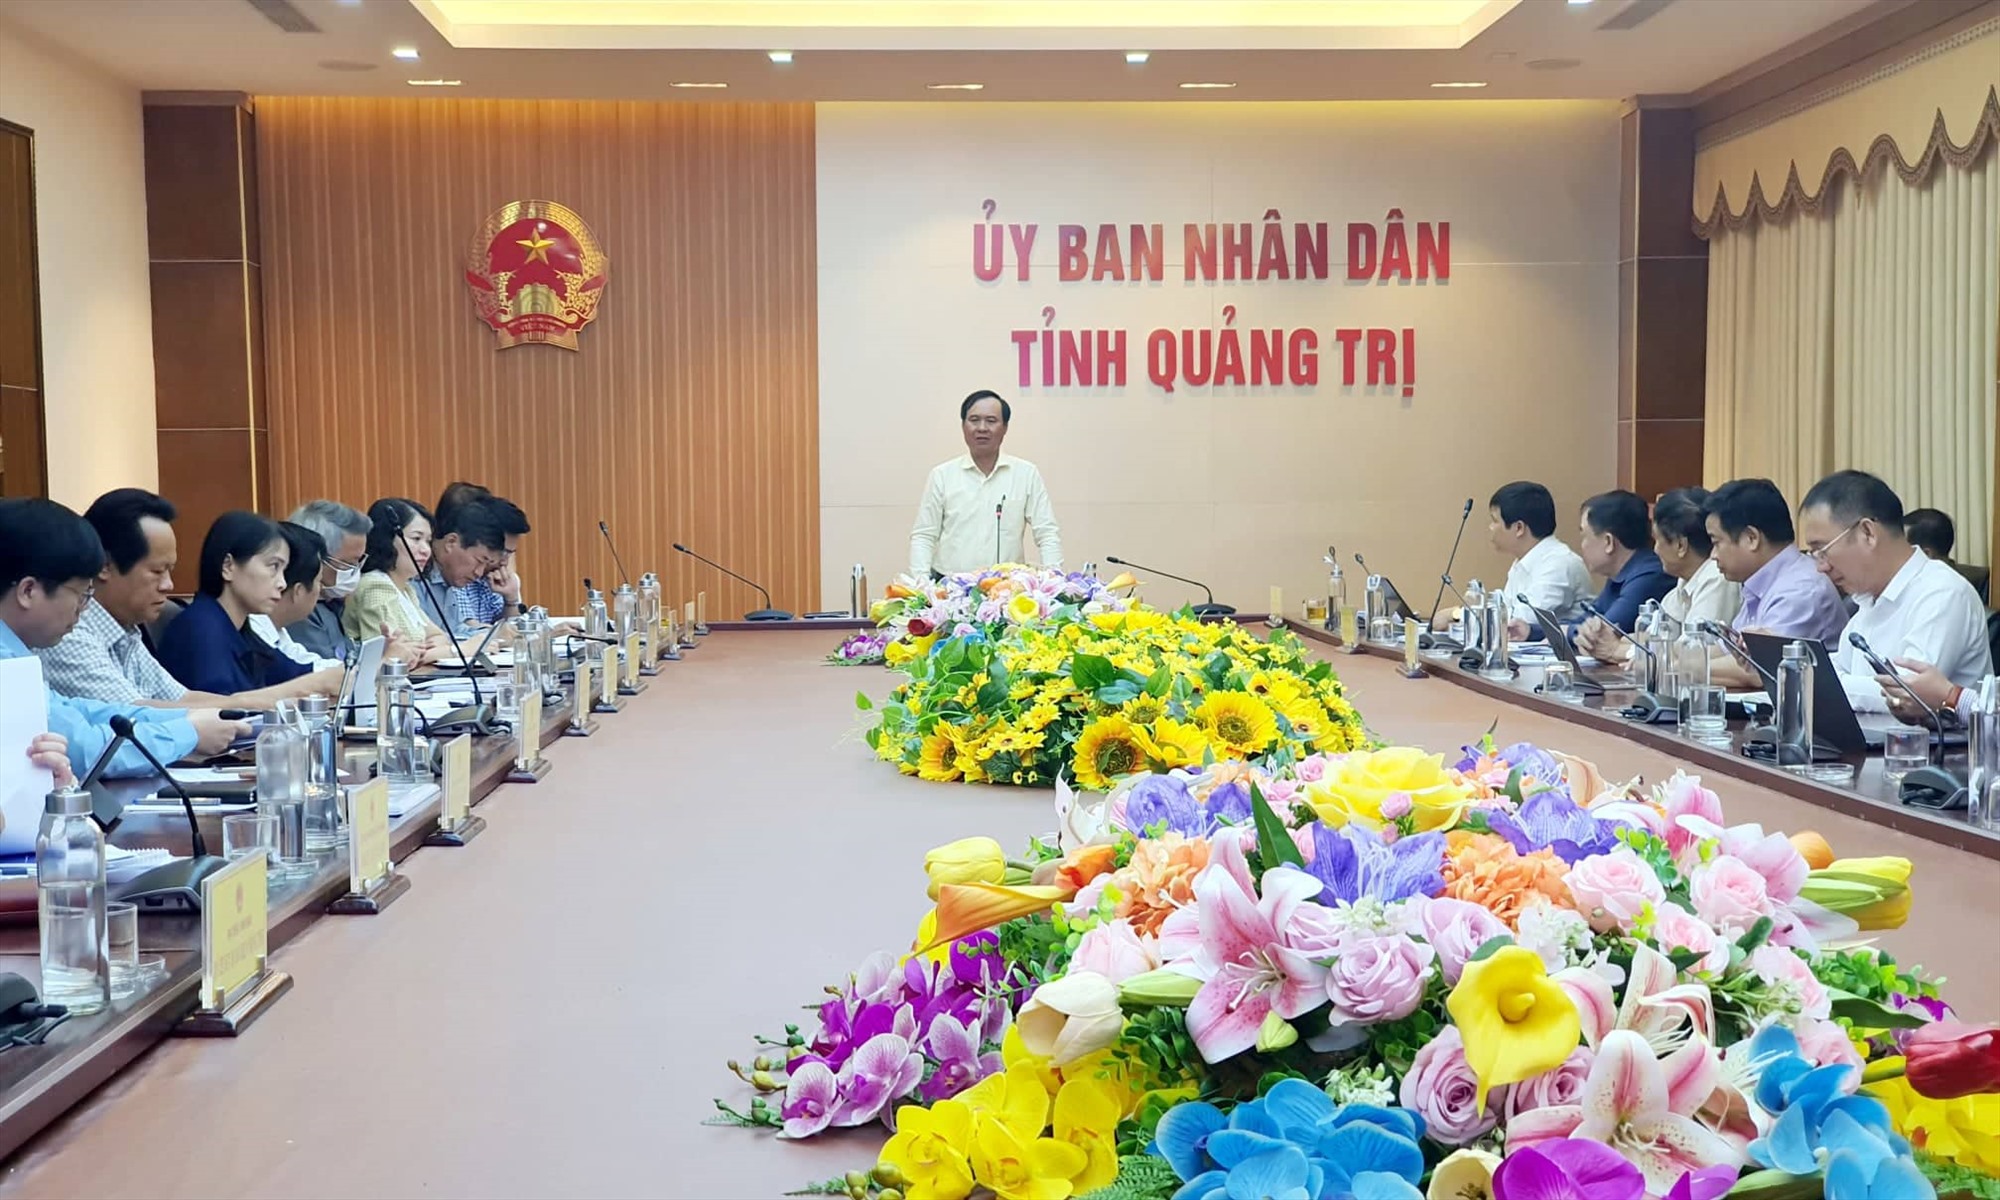 Chủ tịch UBND tỉnh Võ Văn Hưng đề nghị chủ đầu tư nghiên cứu sử dụng công nghệ sản xuất gang thép hiện đại triển khai dự án - Ảnh: T.T